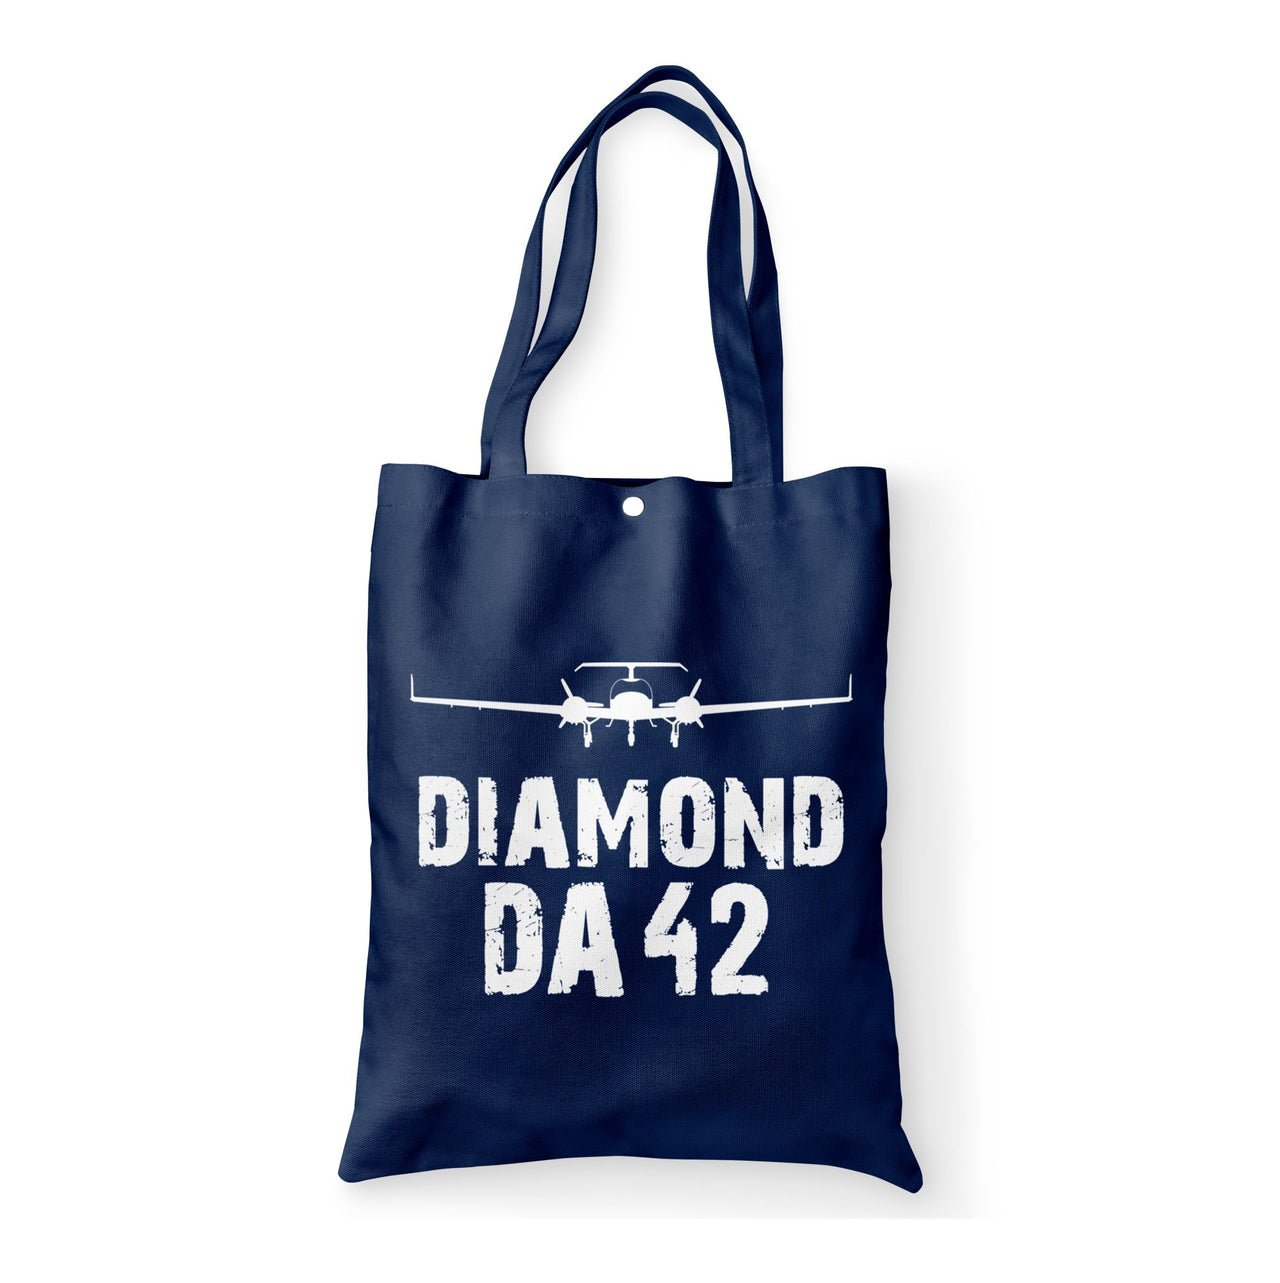 Diamond DA42 & Plane Designed Tote Bags